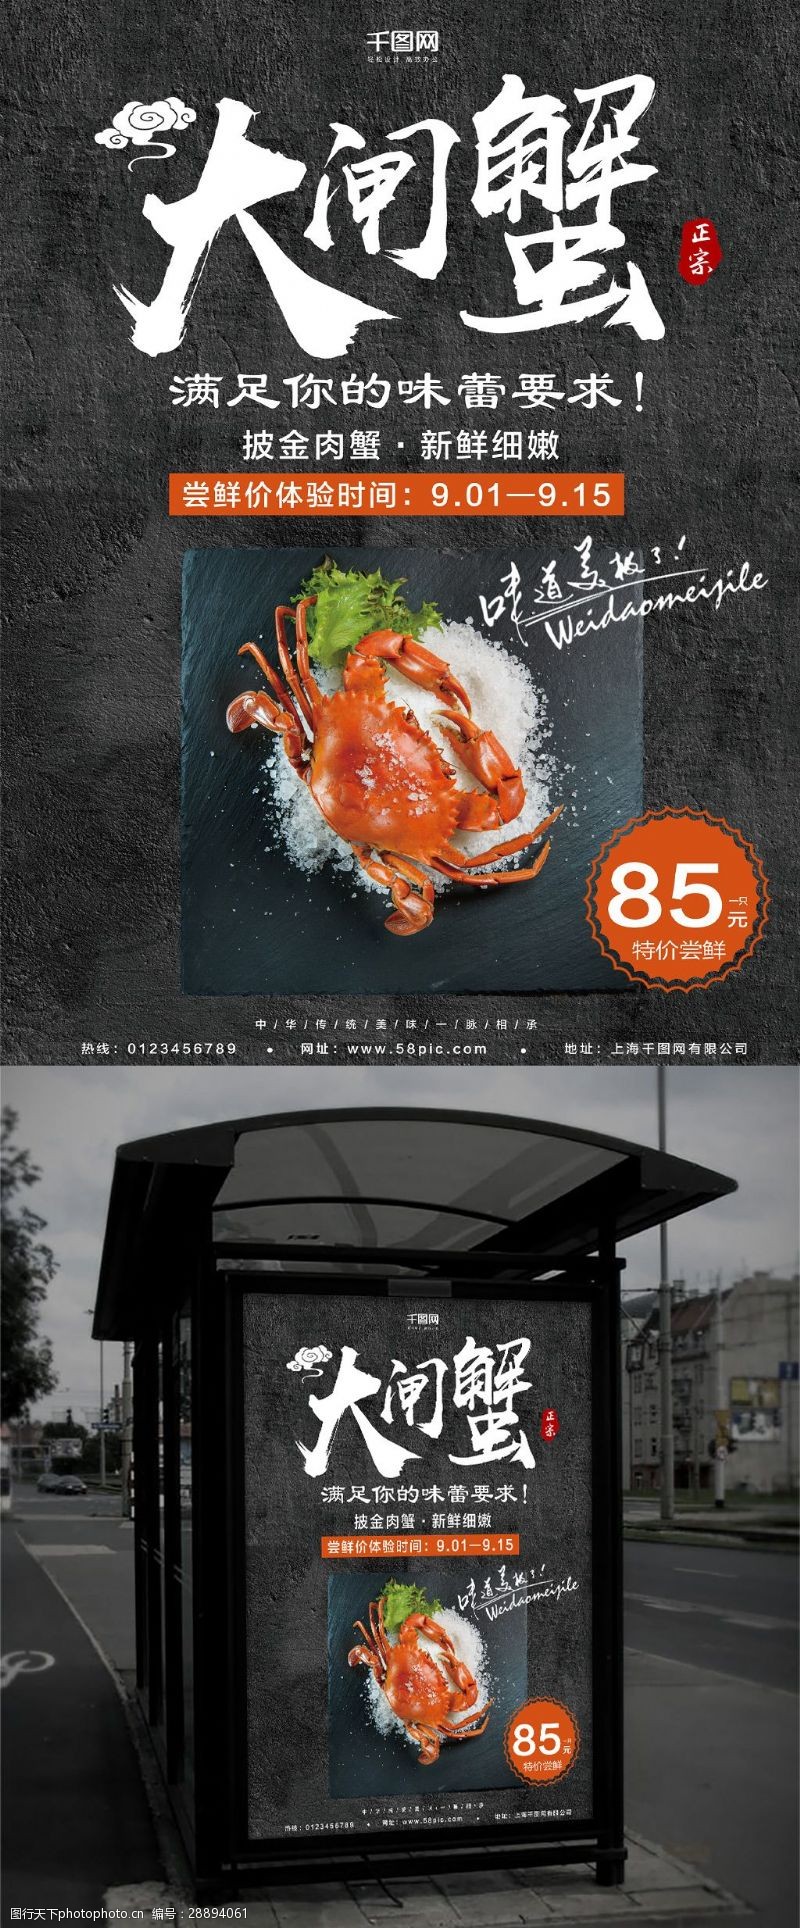 大闸蟹品牌黑色大气大闸蟹美食创意简约商业海报设计